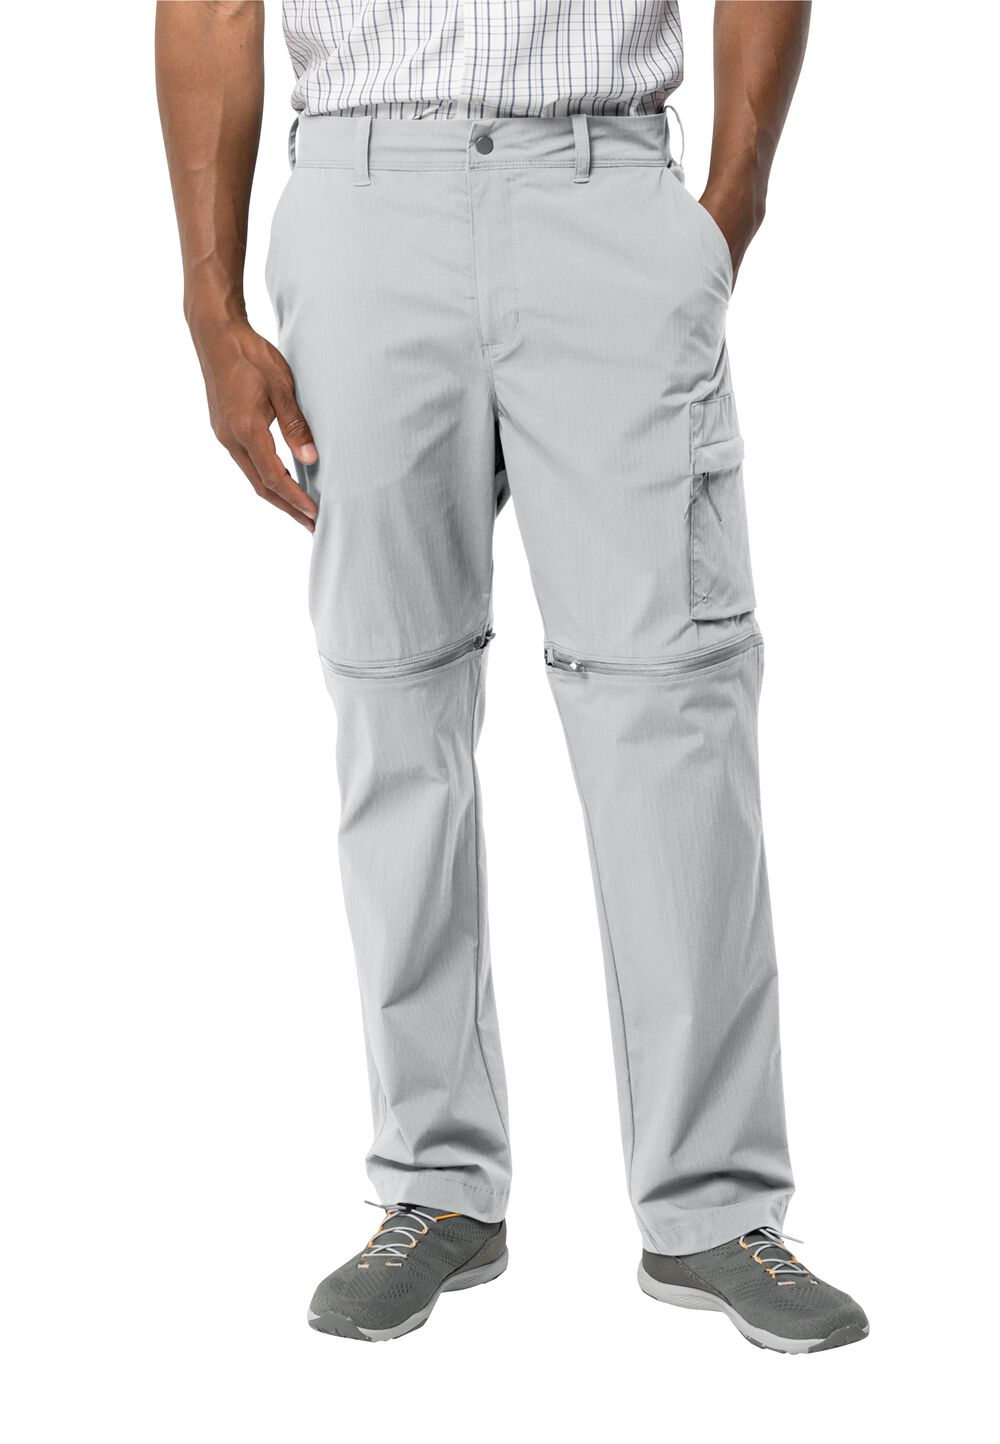 Jack Wolfskin Wanderthirst Zip Pants Men Zip-Off-broek Heren 54 grijs cool grey